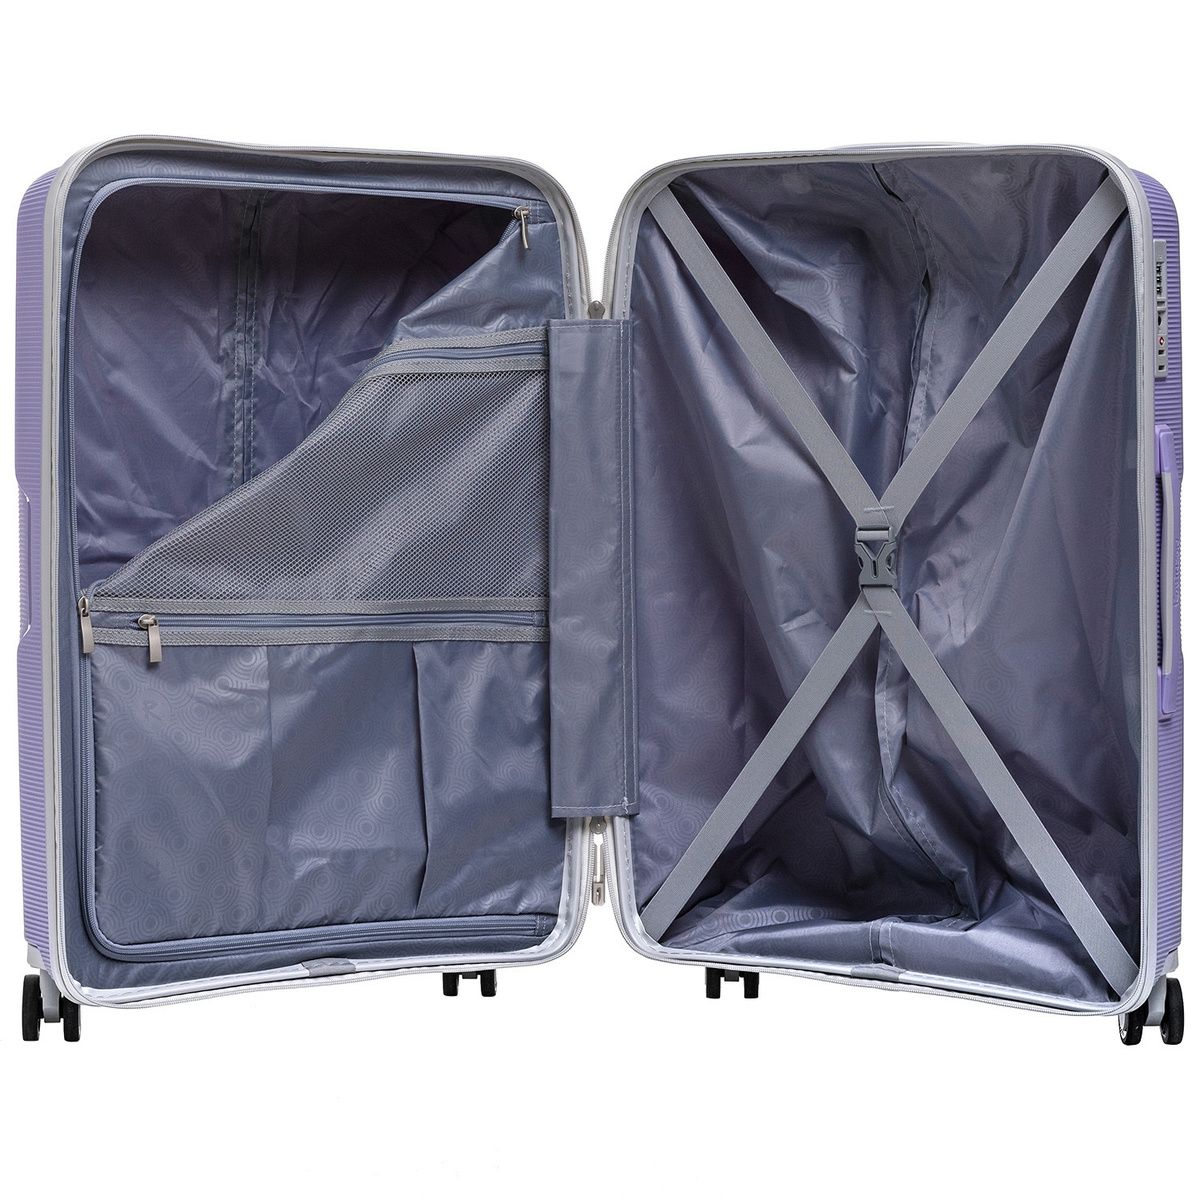 Внутри чемодана одно отделение на замке с дополнительным карманом и просторное отделение с багажными ремнями для еще более удобной организации.